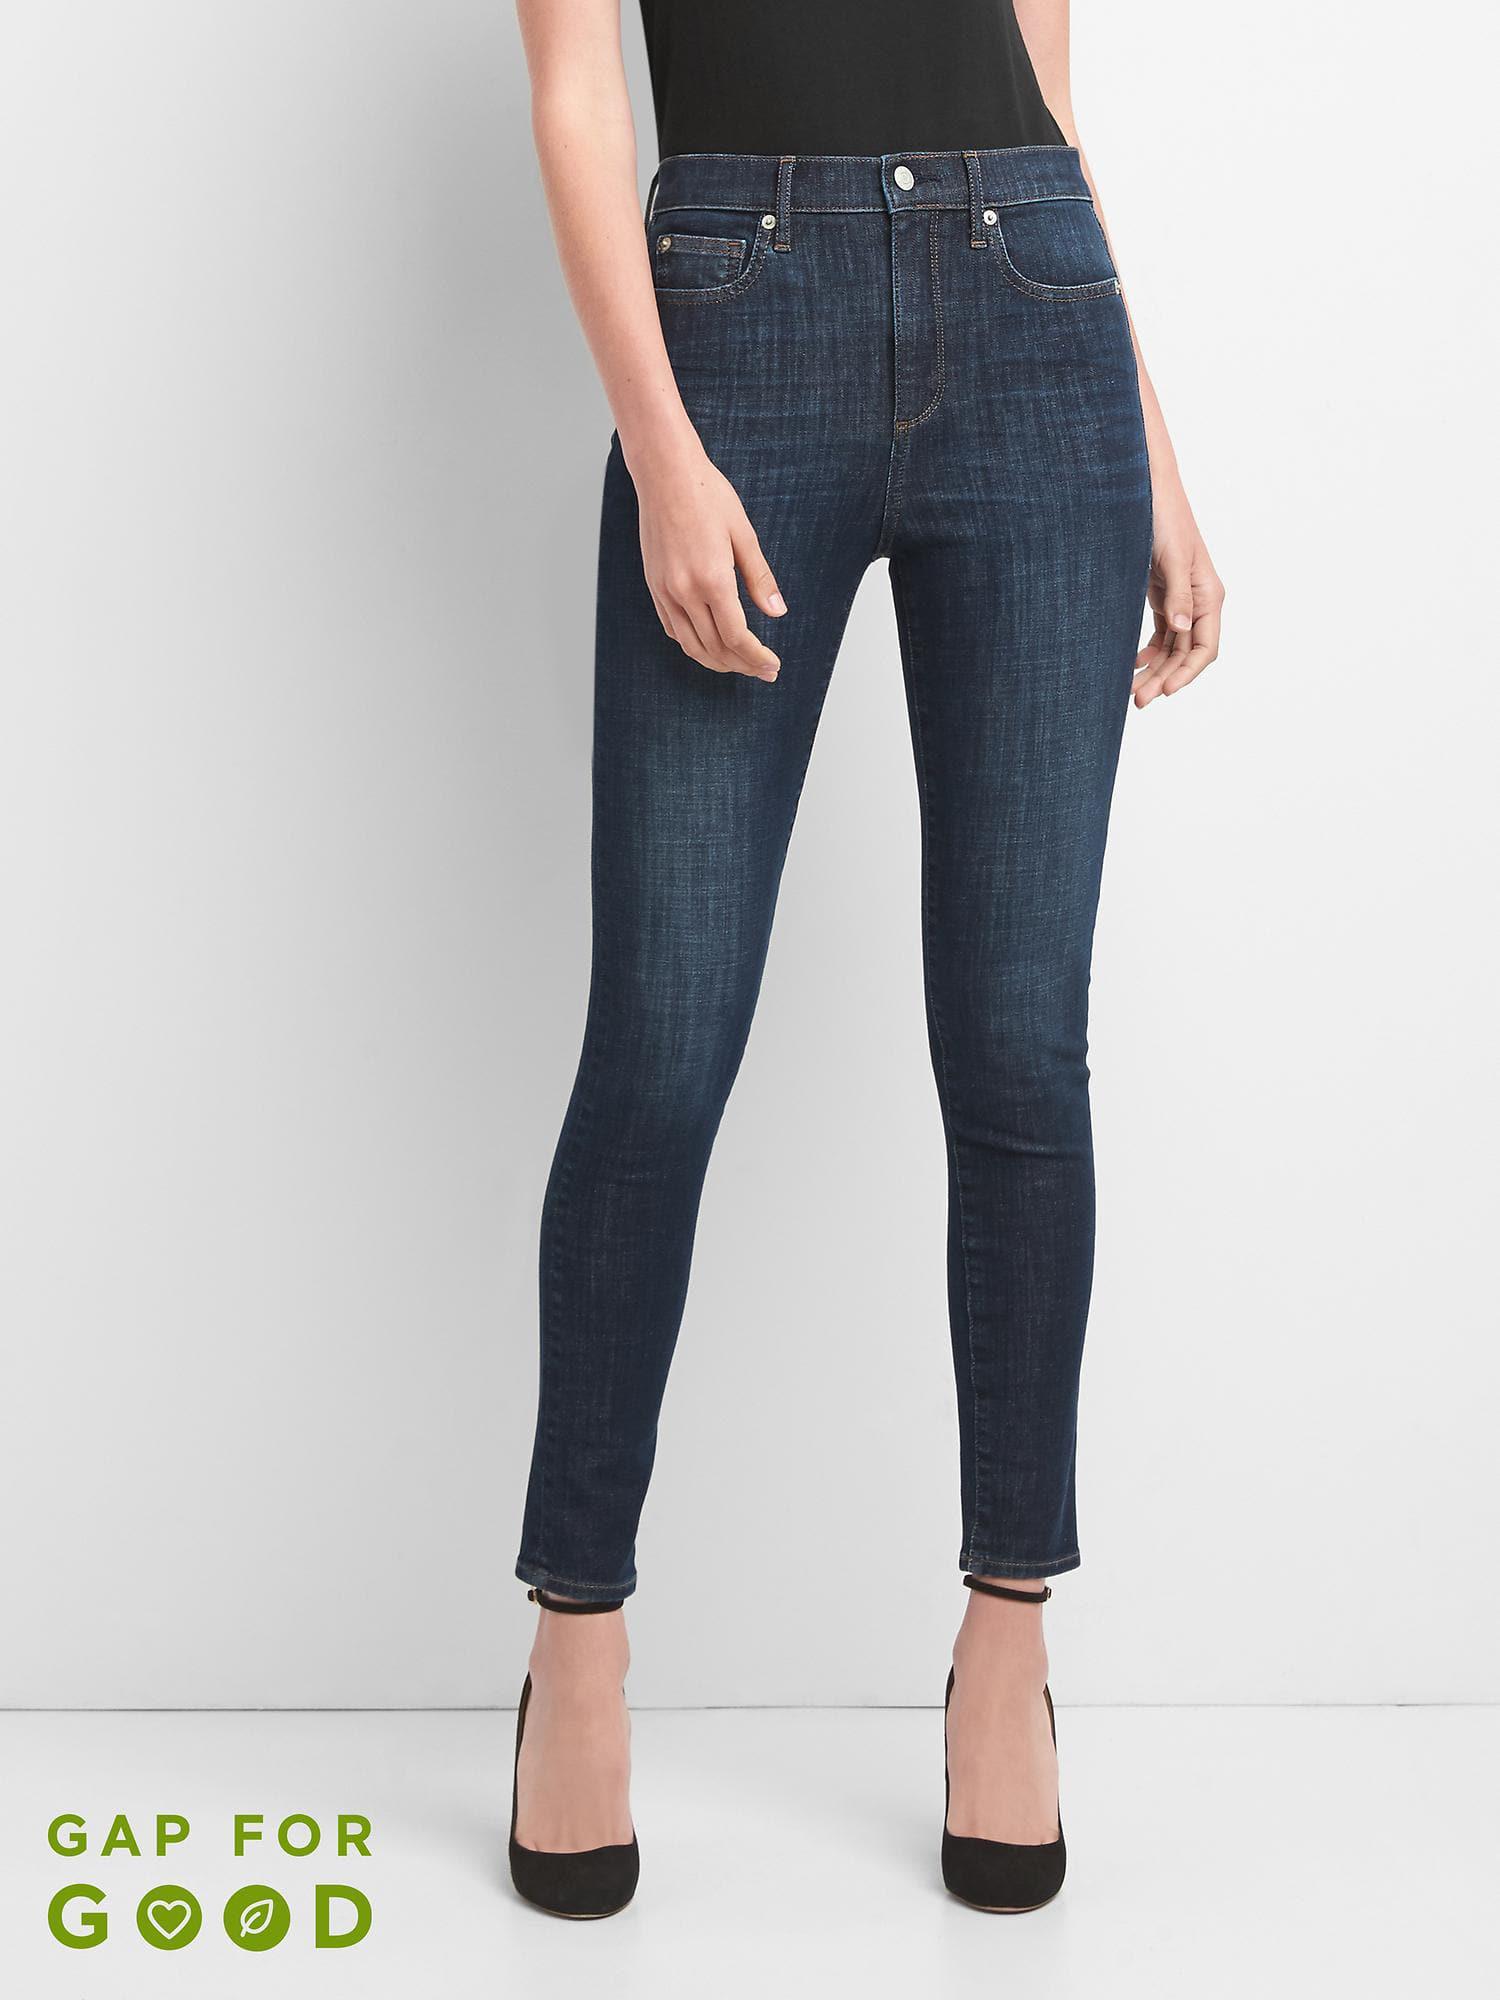 gap true skinny super high rise jeans Off 52% - canerofset.com